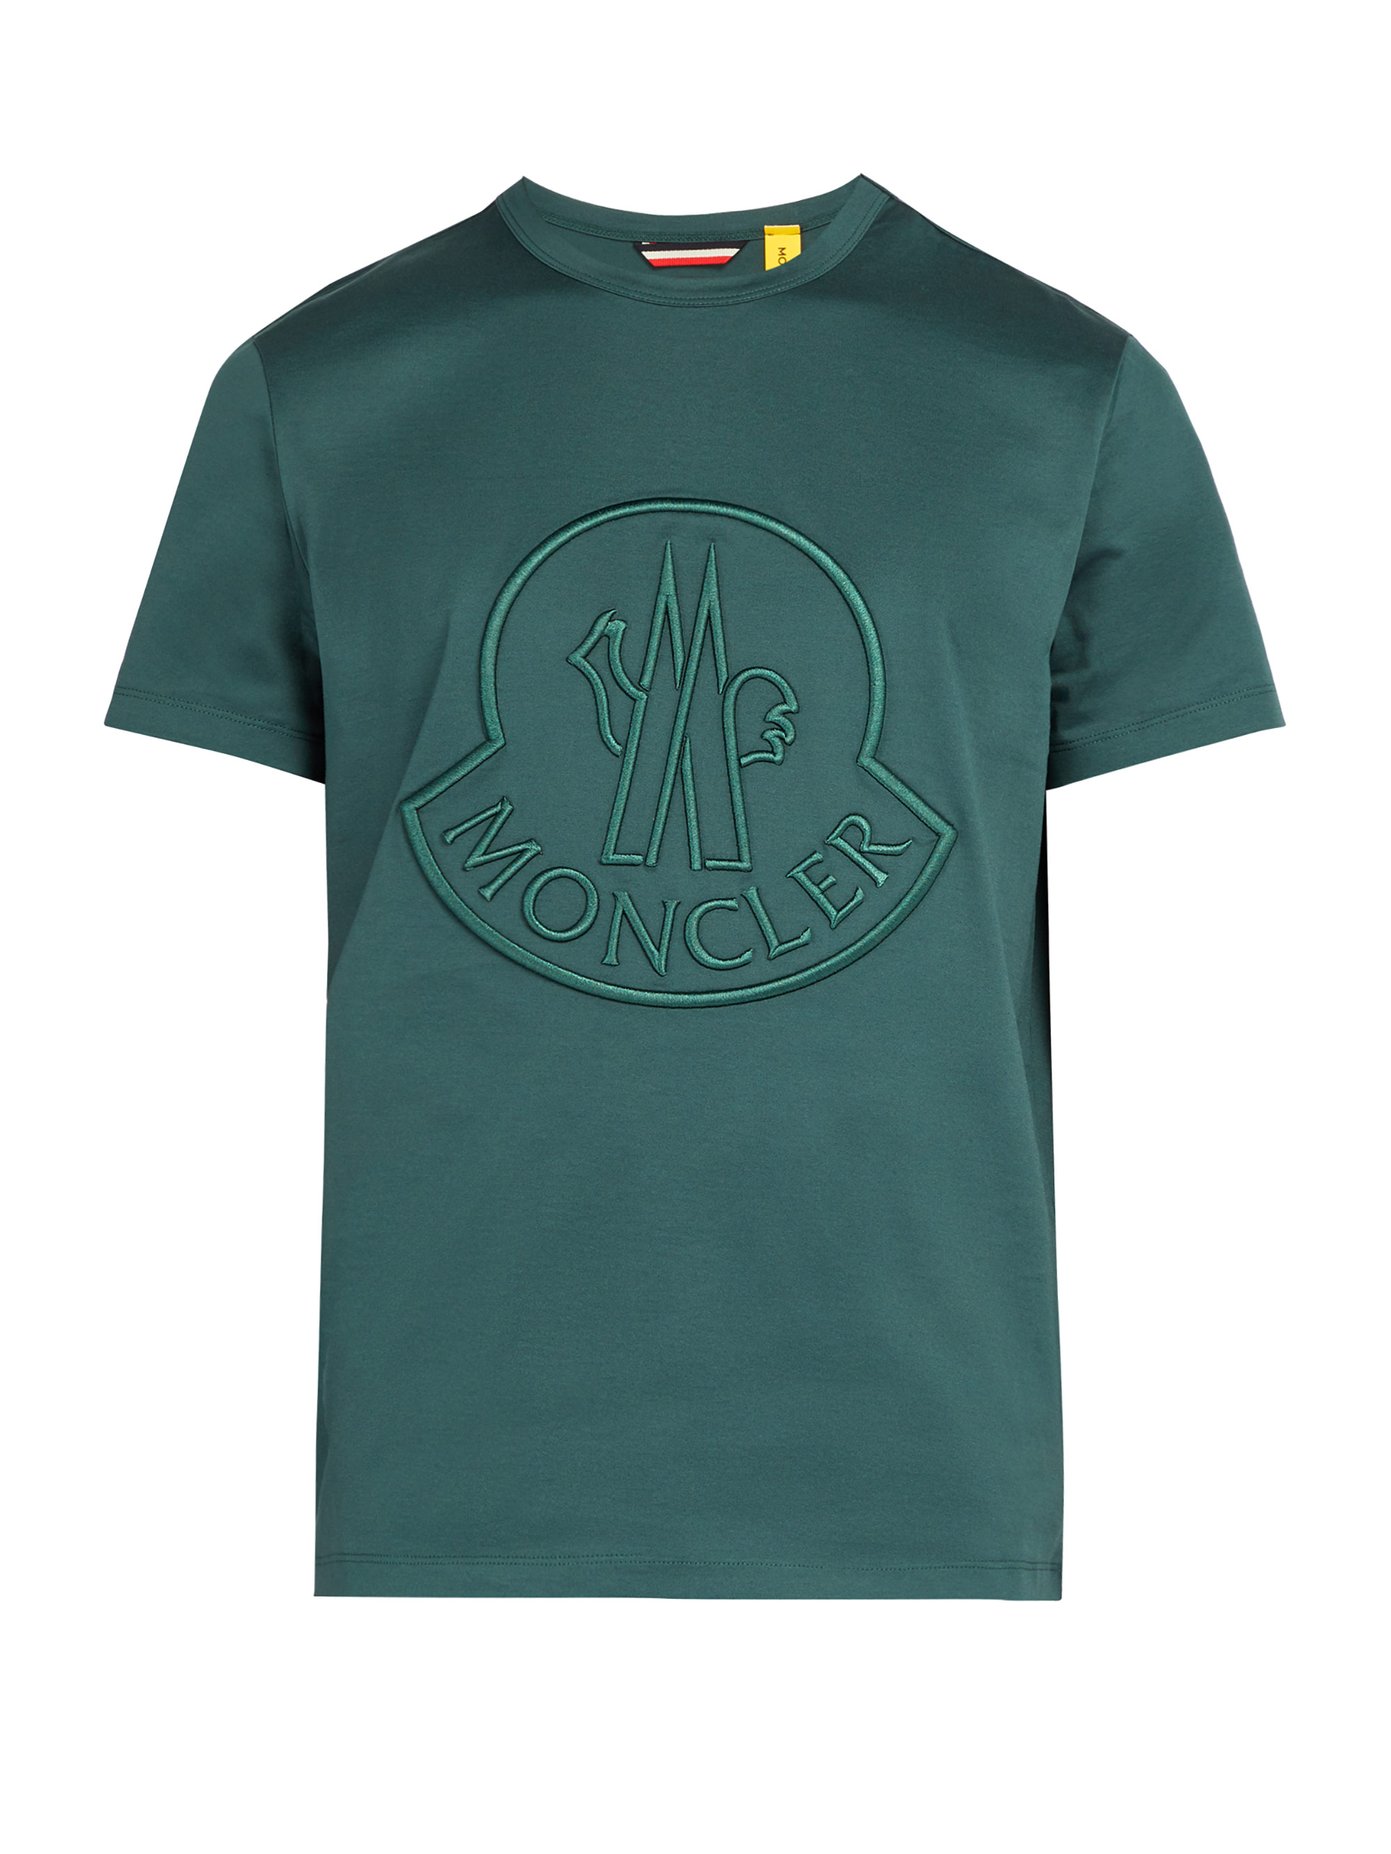 moncler large logo t shirt